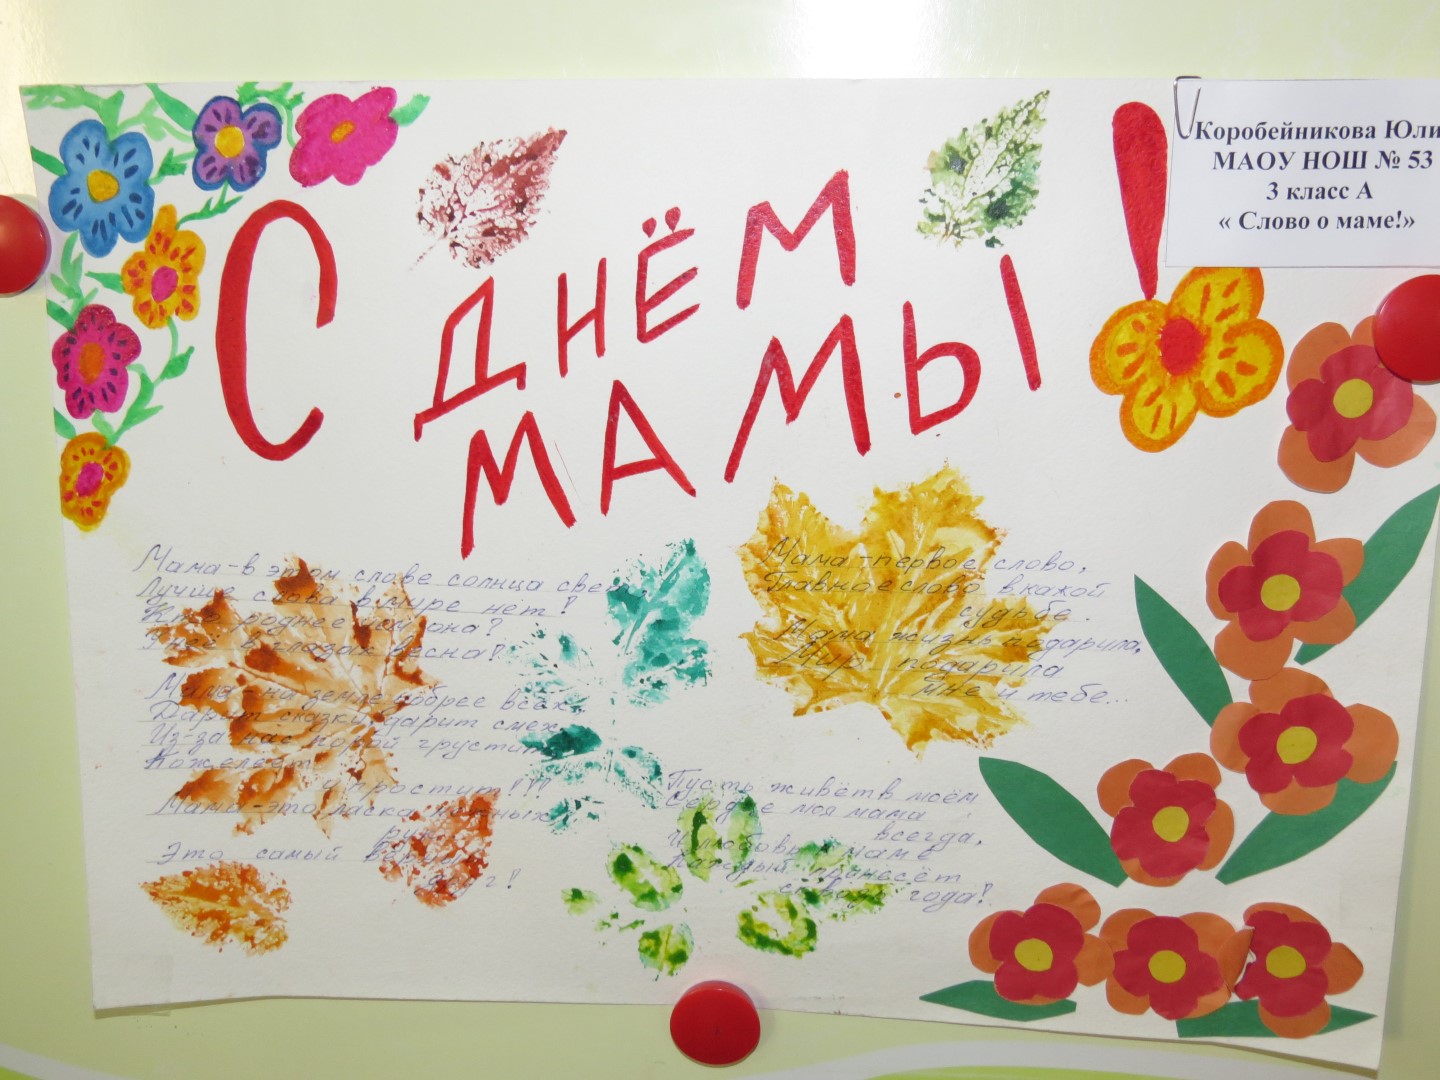 День матери в России в 2018 году - какого числа, картинки, поздравления, сценарий